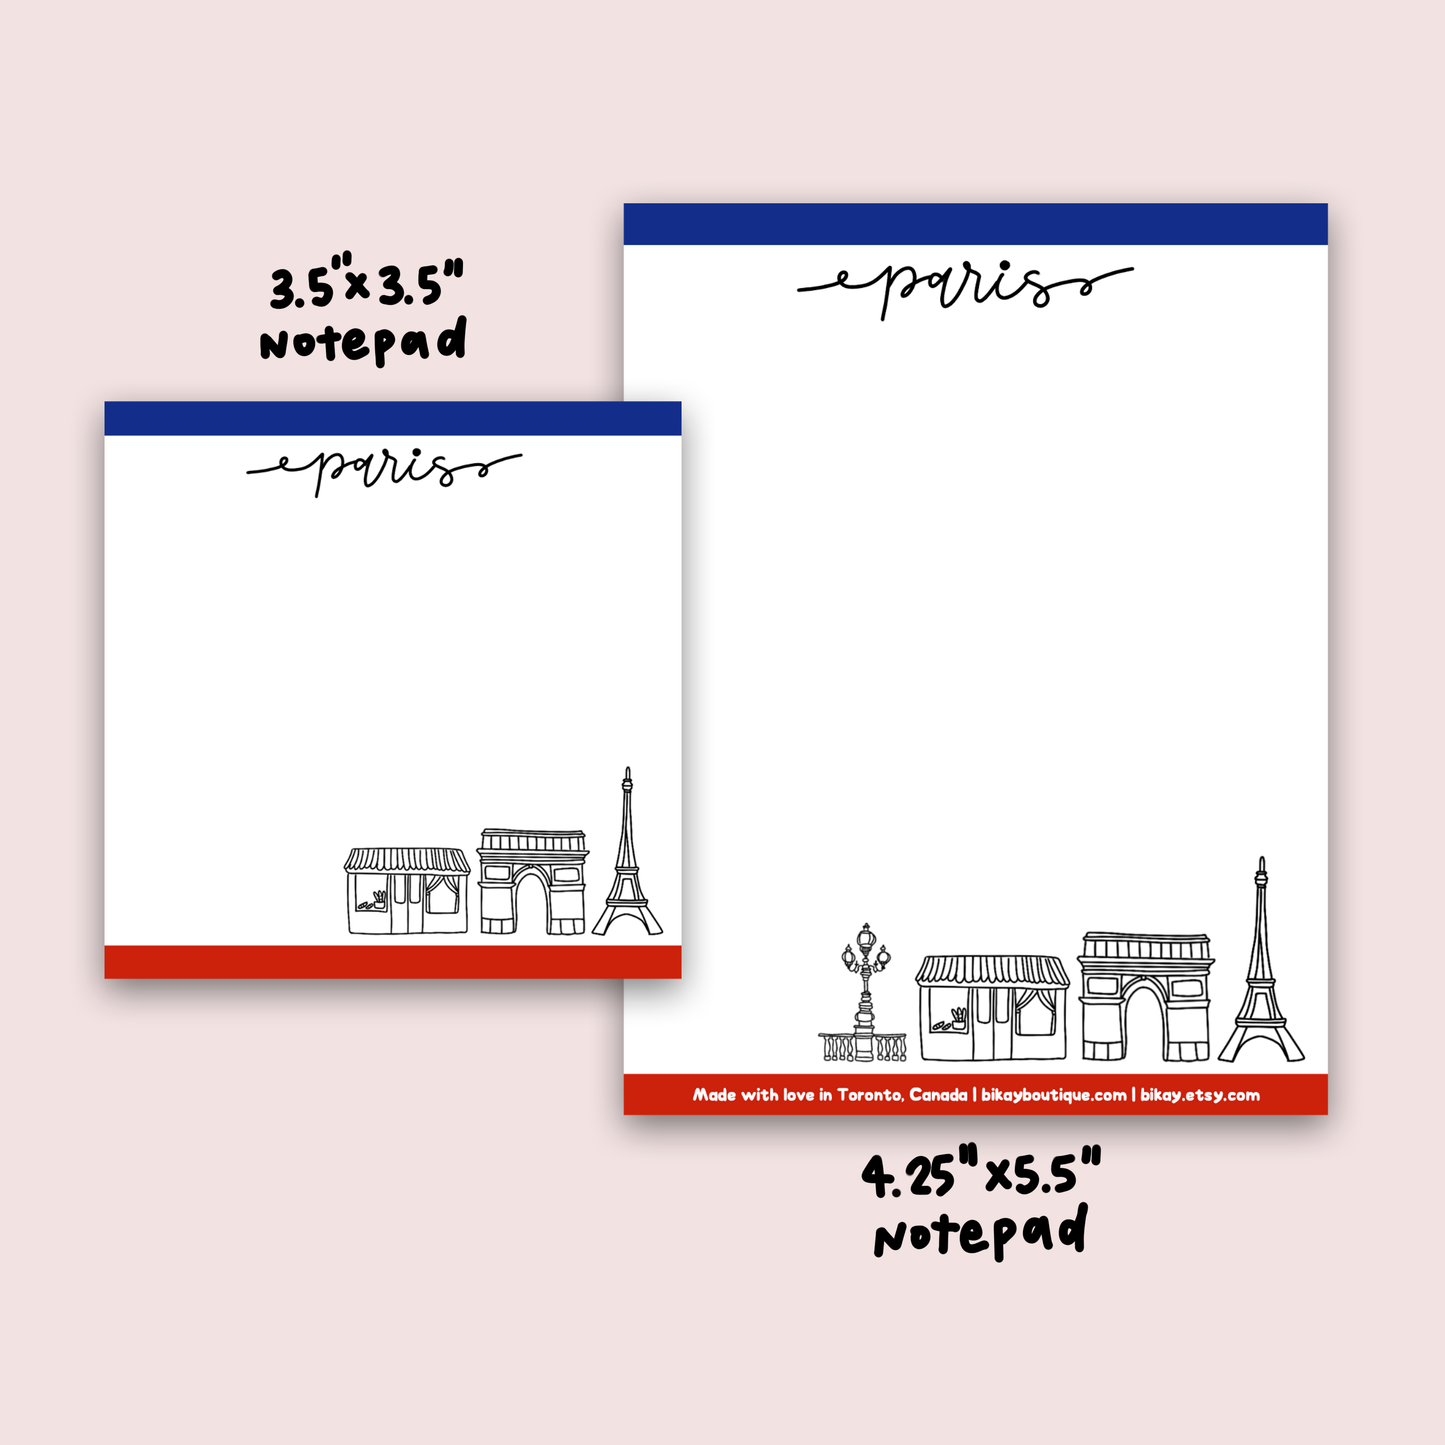 Paris Notepad 4.25"x5.5"